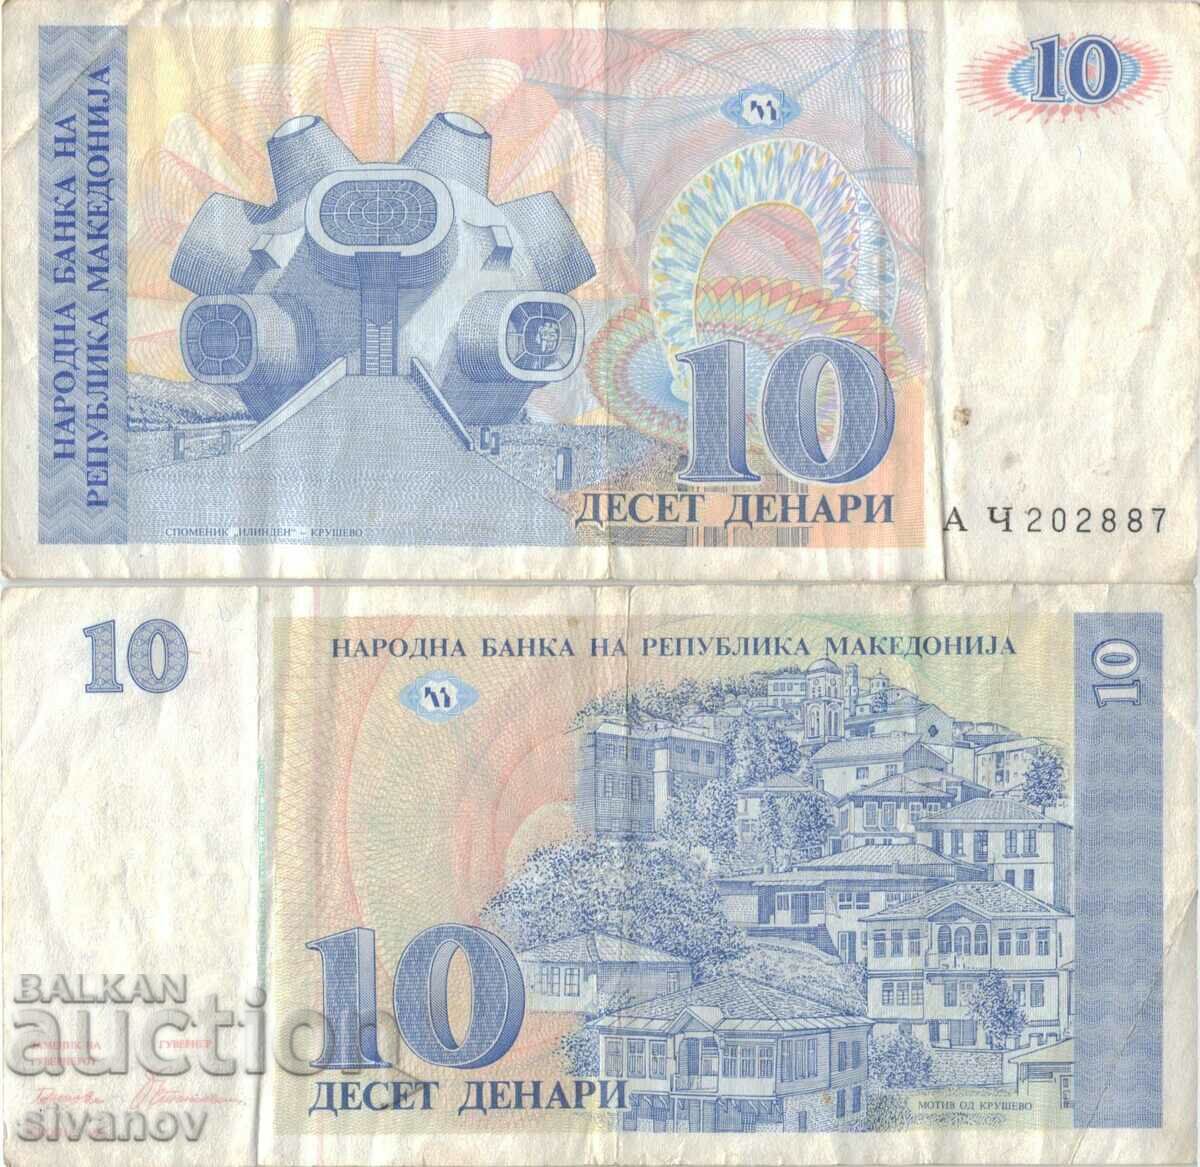 Μακεδονία 10 denar 1993 τραπεζογραμμάτιο #5213